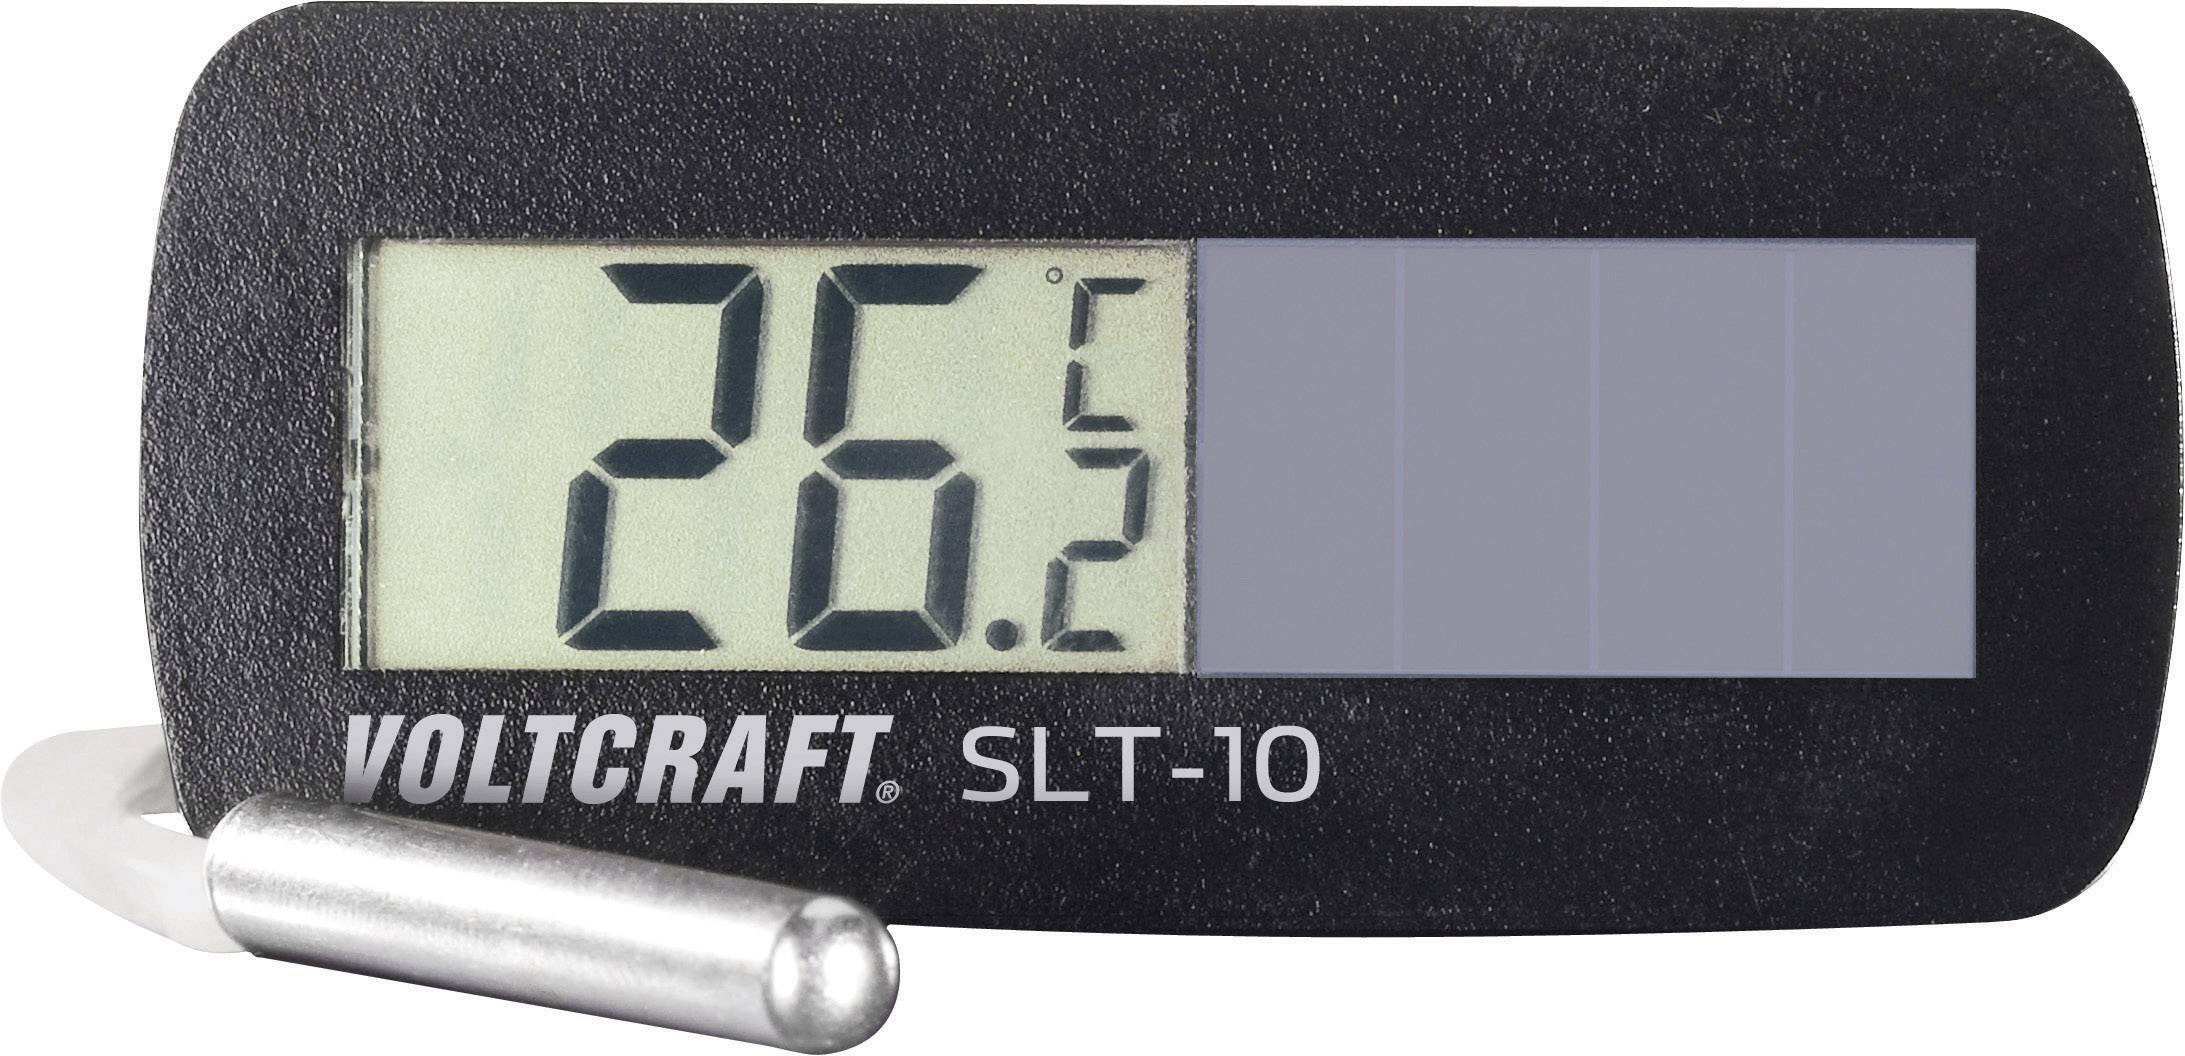 VOLTCRAFT SLT-10 Solar-Einbauthermometer, Einbaumaße 60 x 26 mm, wasserdicht